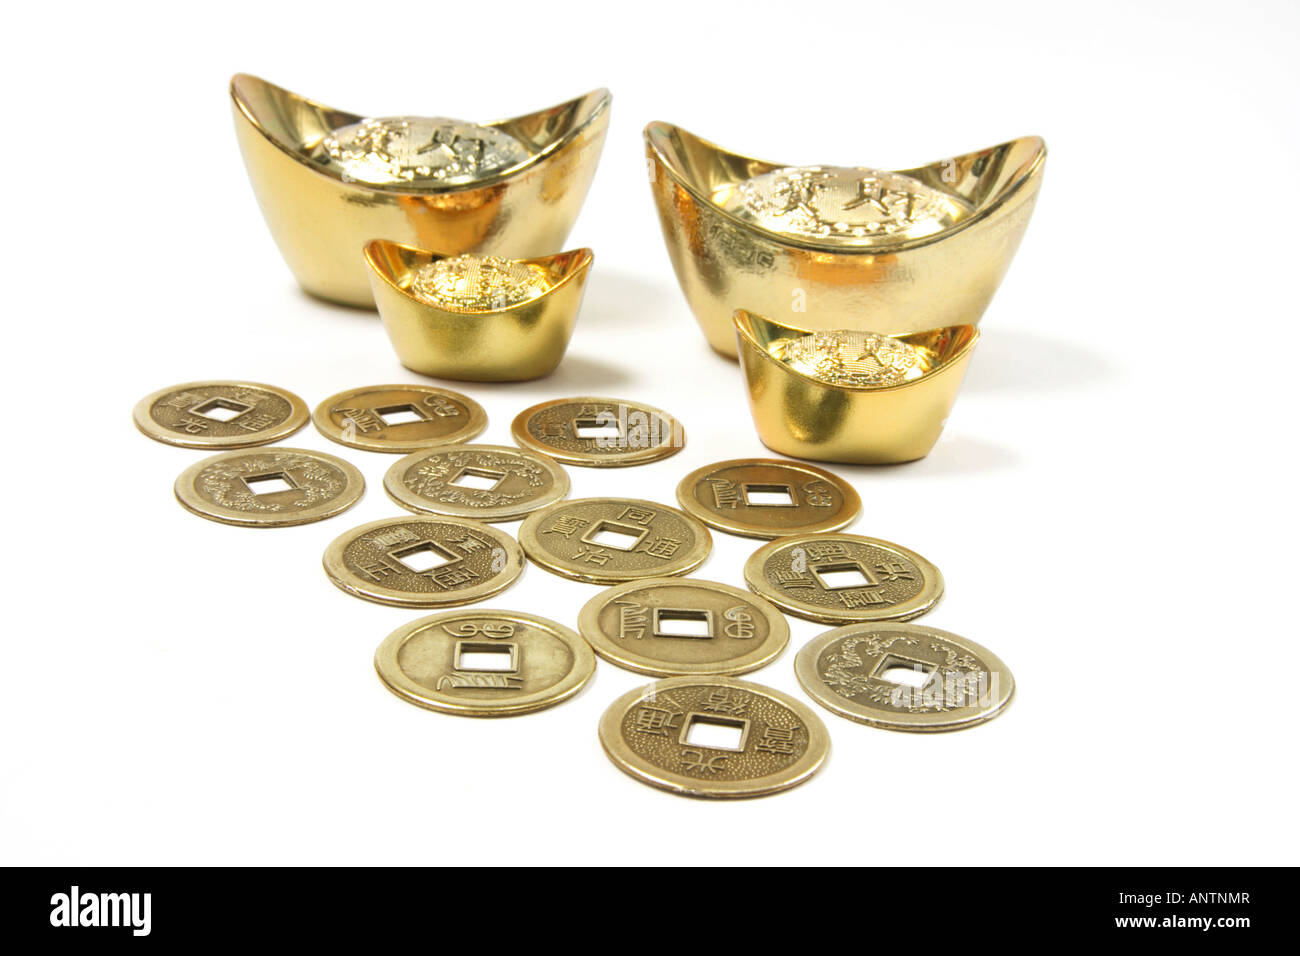 Antiguo chino de las monedas y lingotes de oro Foto de stock